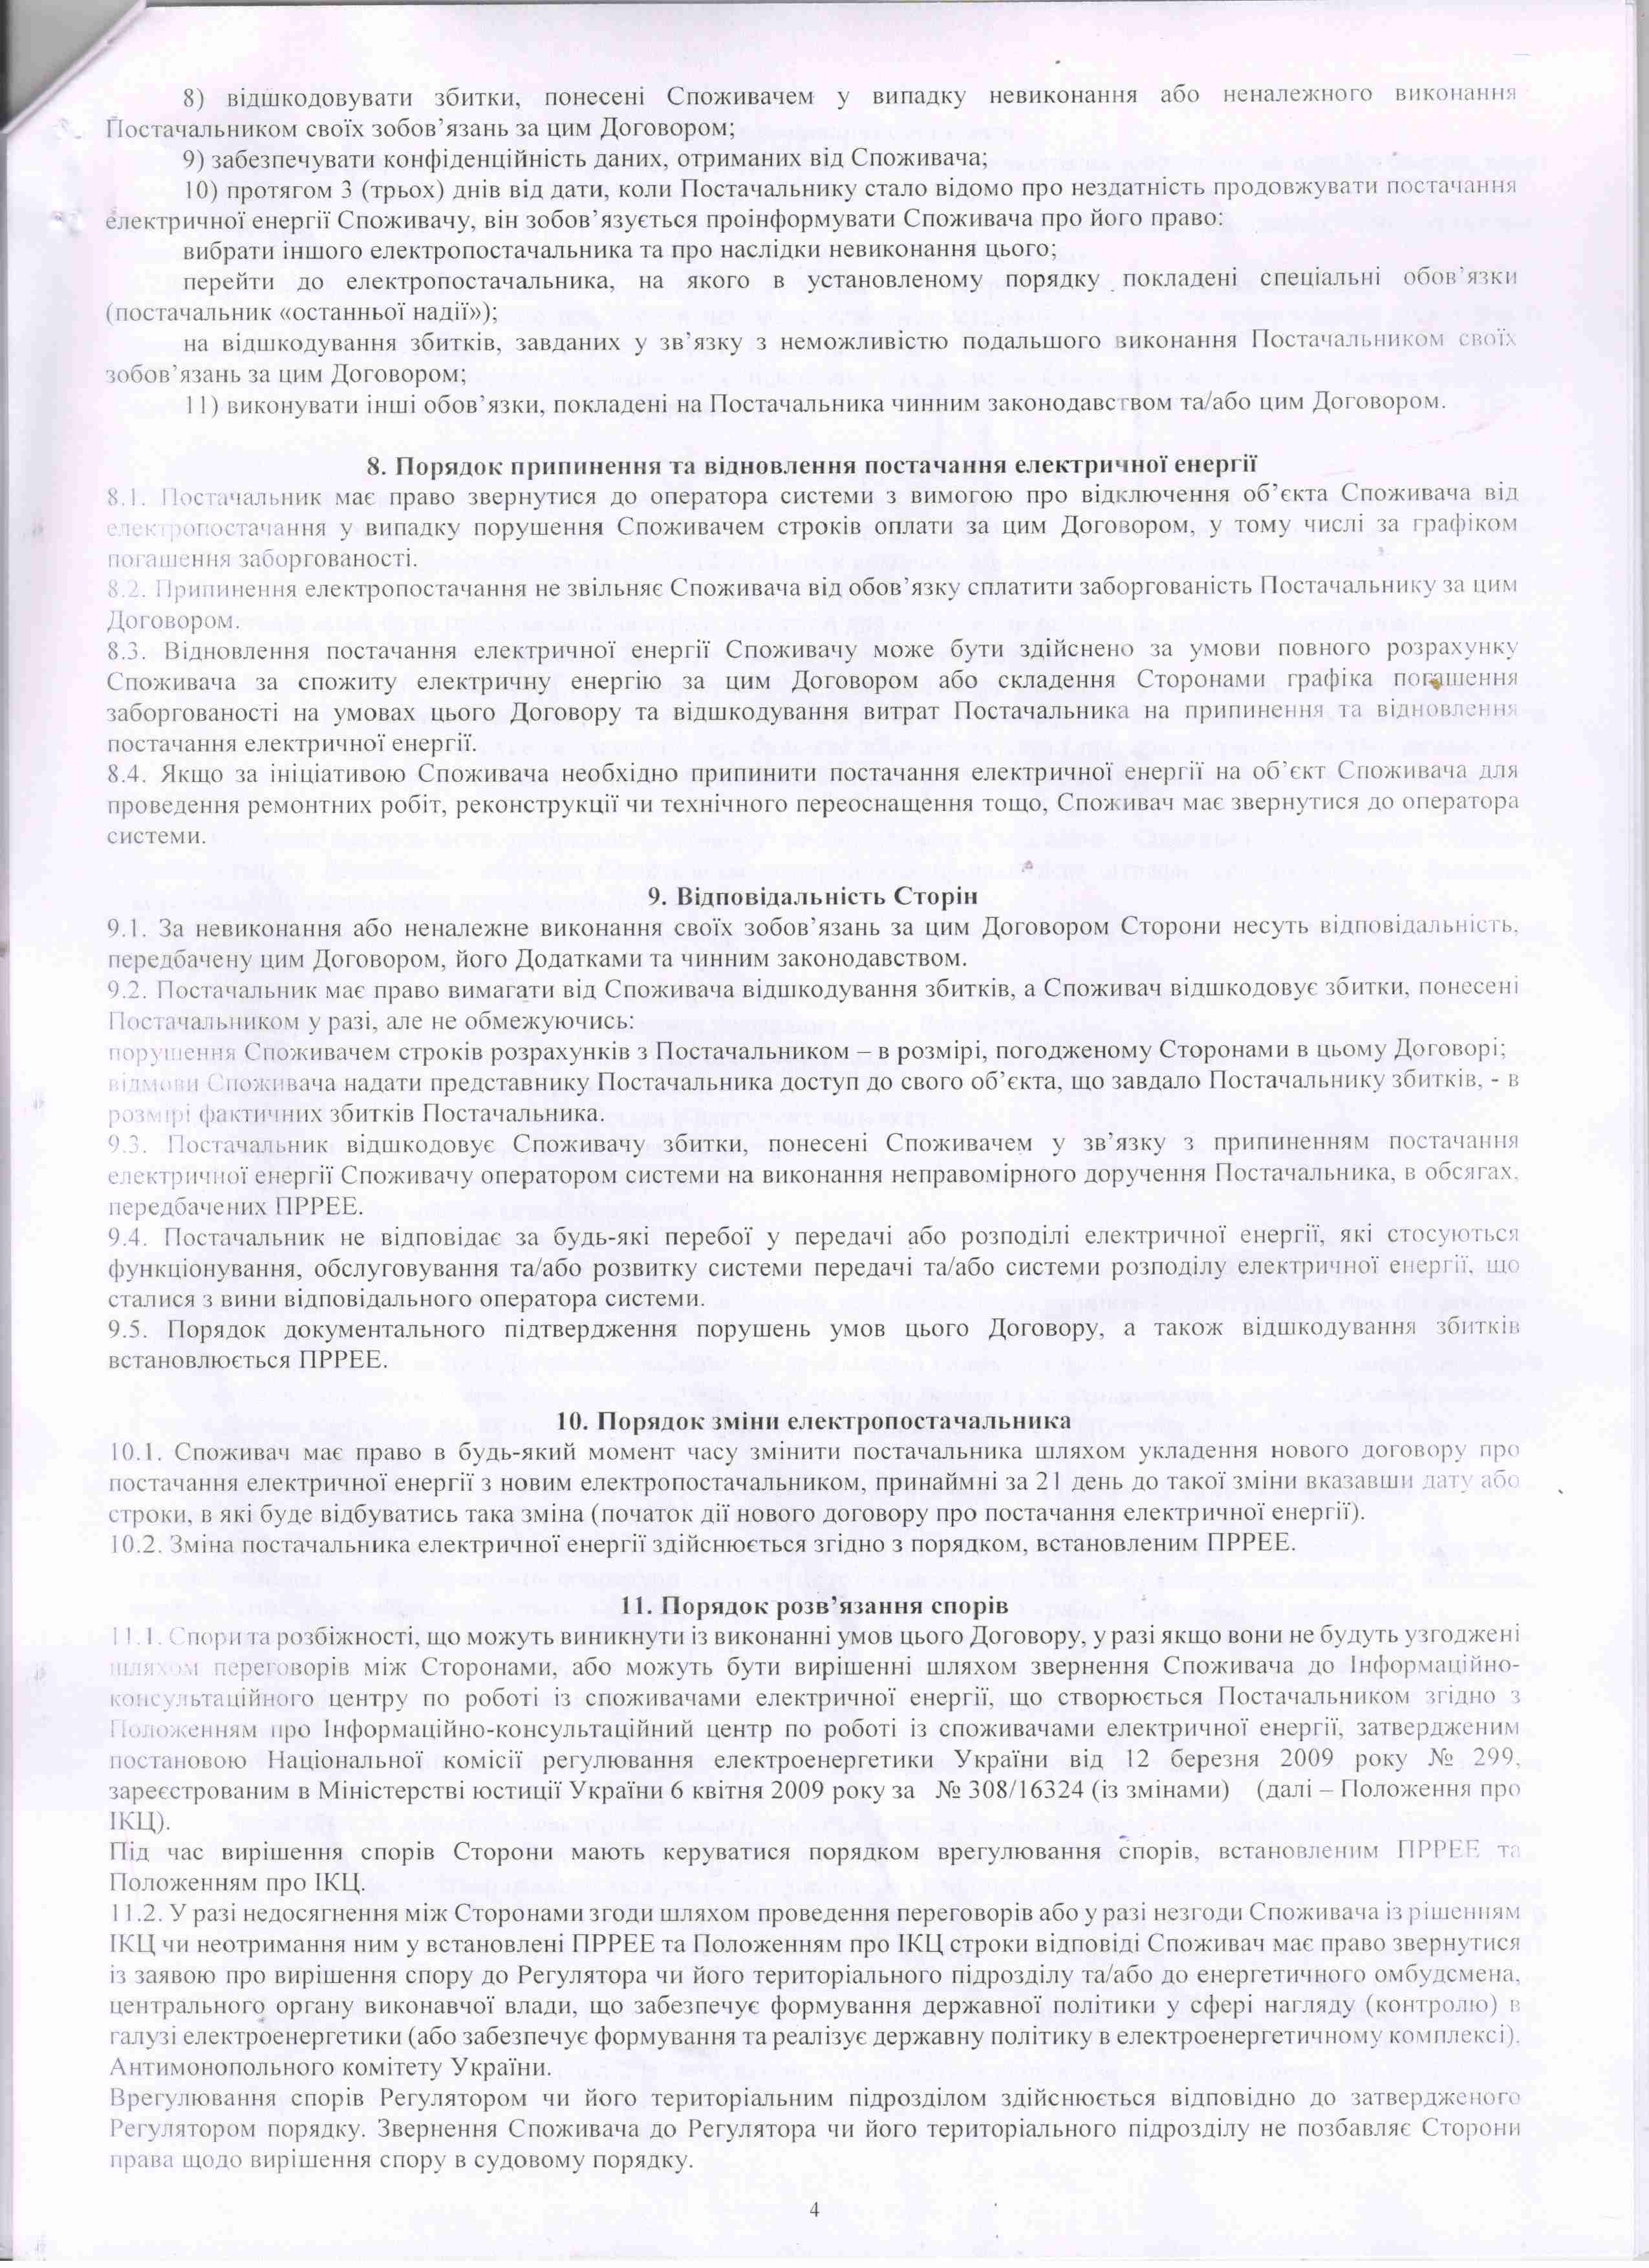 Договір №ВРЕ-192-2021/4 від 25.01.2021 р.